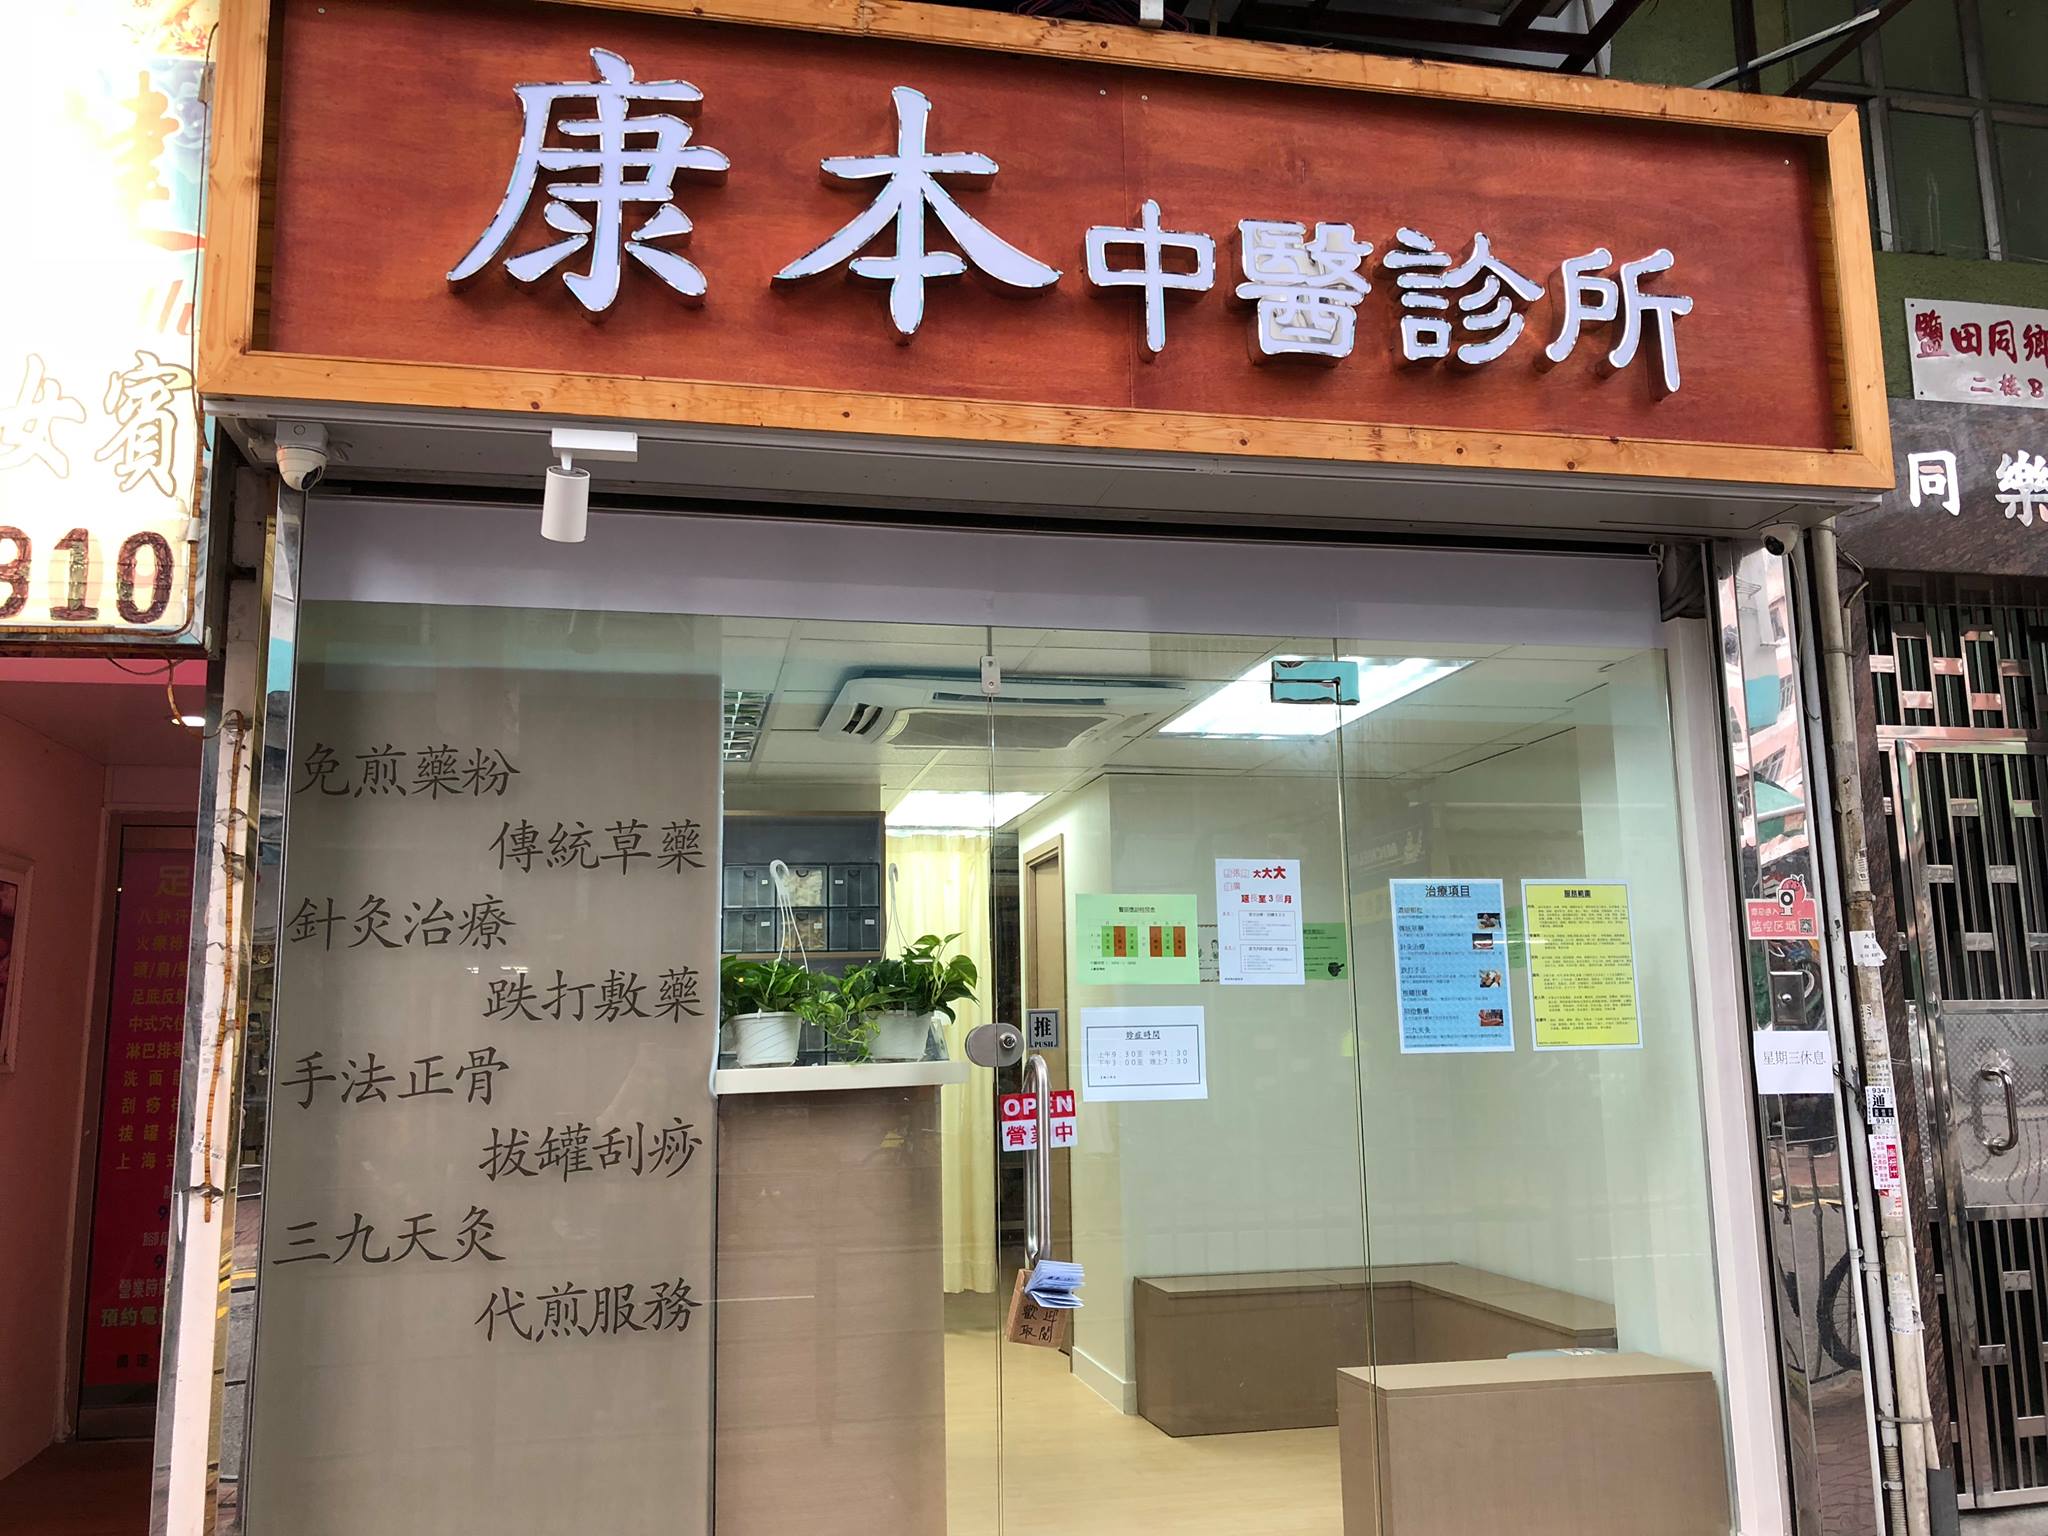 中医诊所: 康本中醫診所